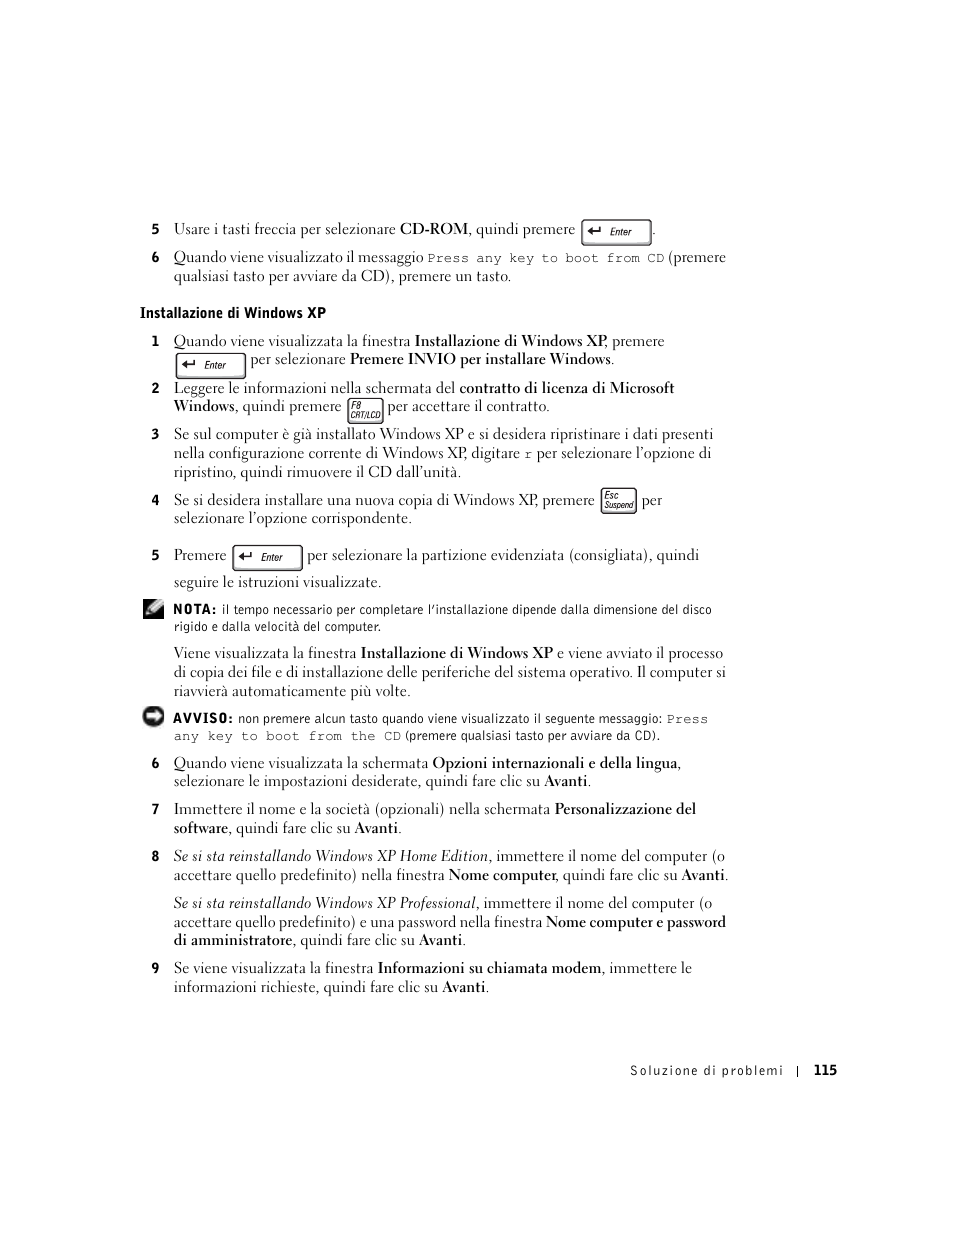 Dell Inspiron 8600 Manuale d'uso | Pagina 115 / 166